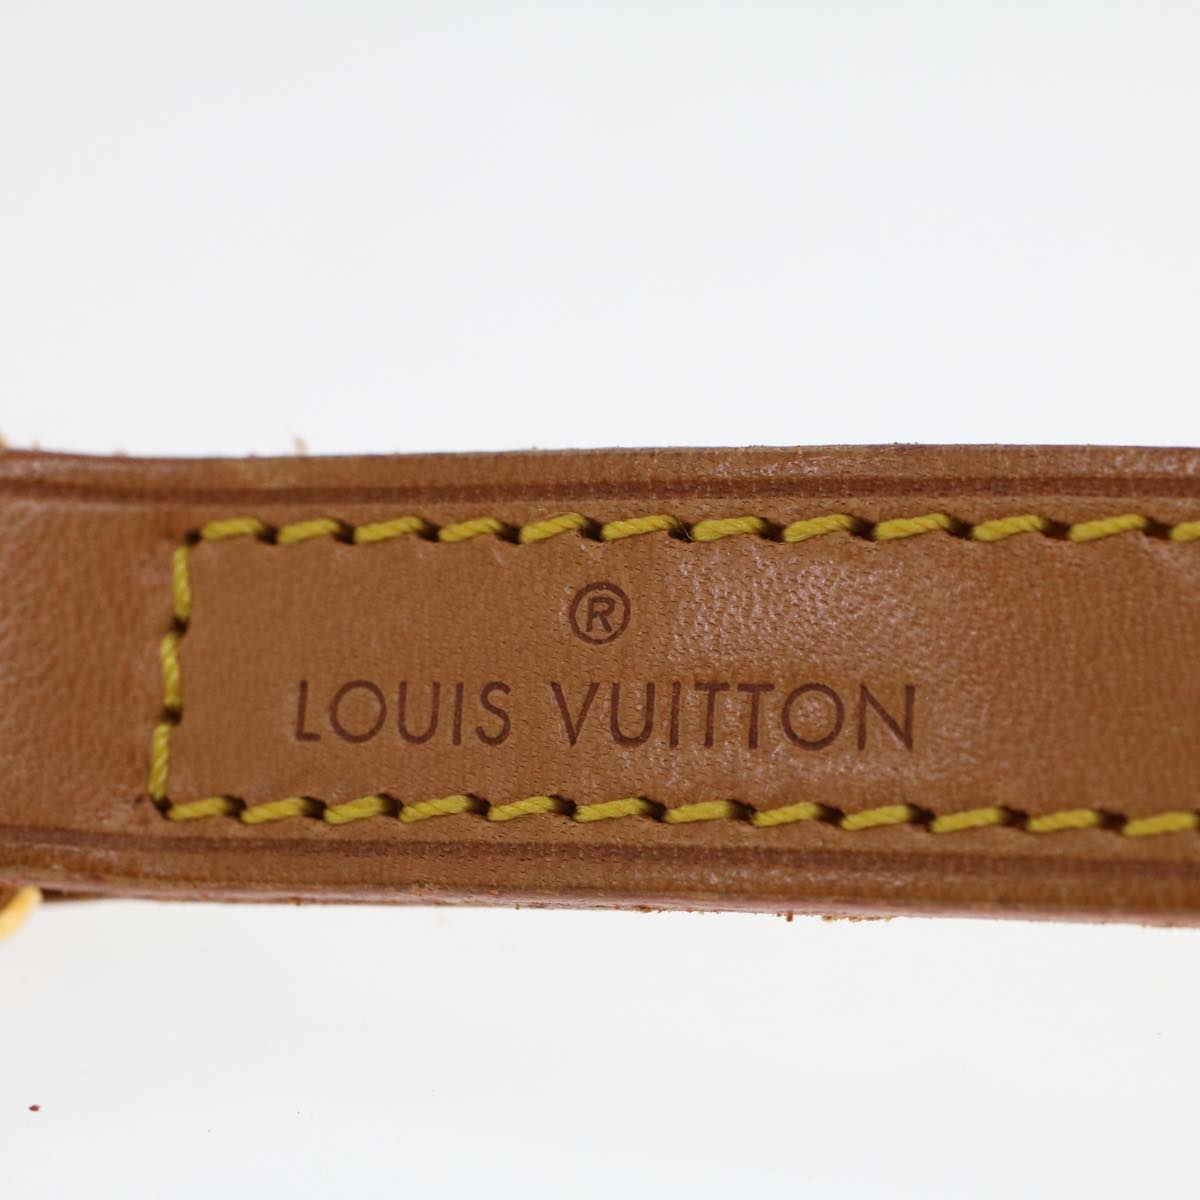 LOUIS VUITTON Shoulder Strap Leather 35.4"" Beige LV Auth 44920